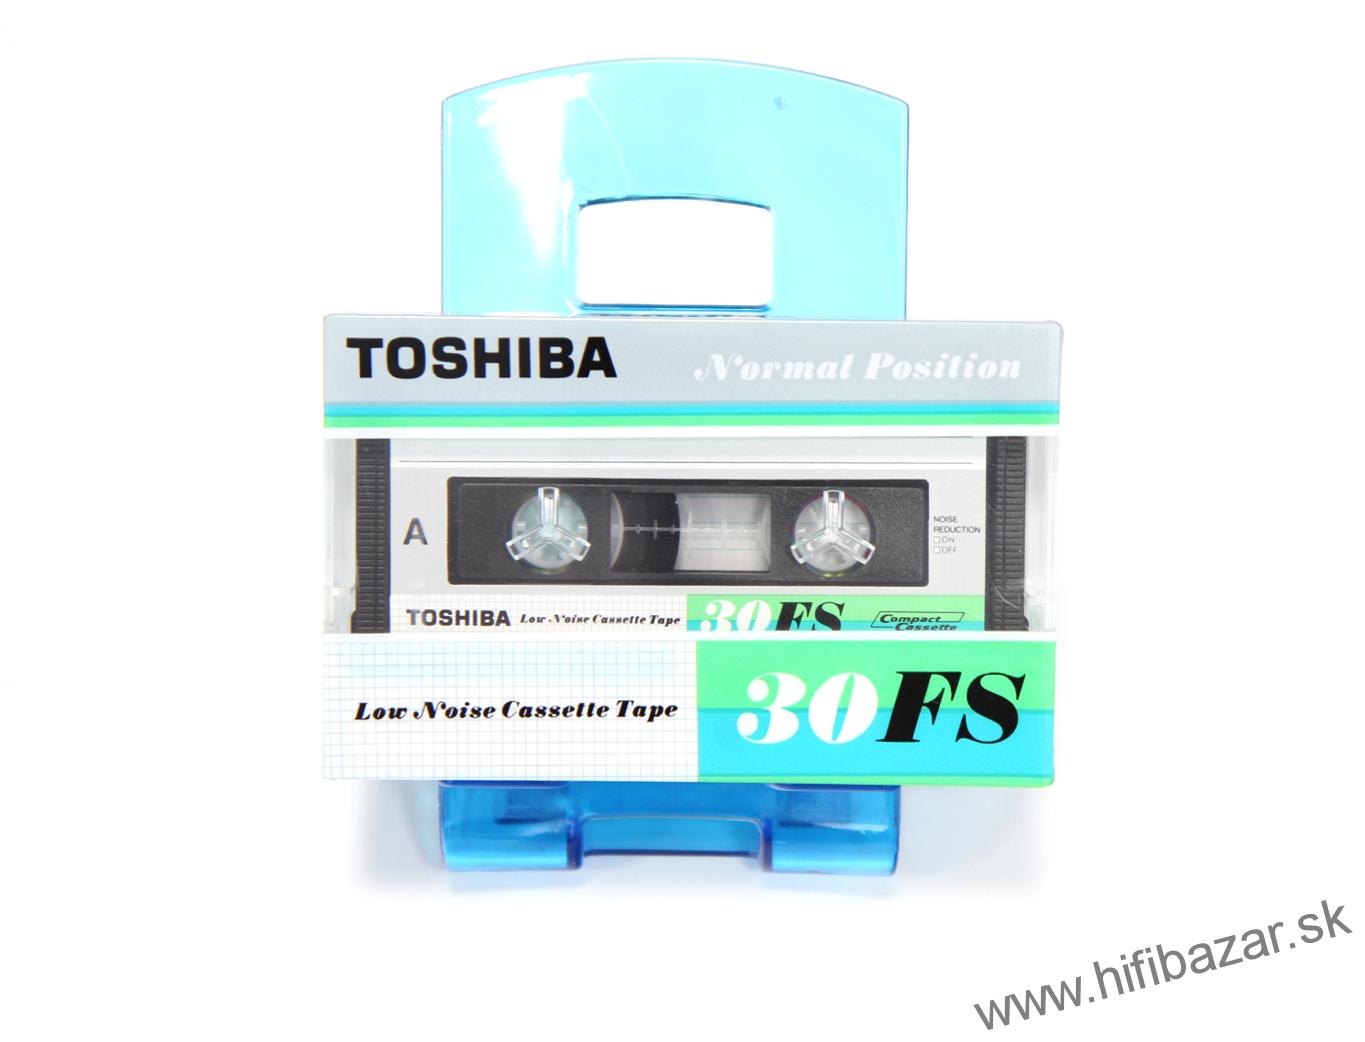 TOSHIBA FS-30 Japan